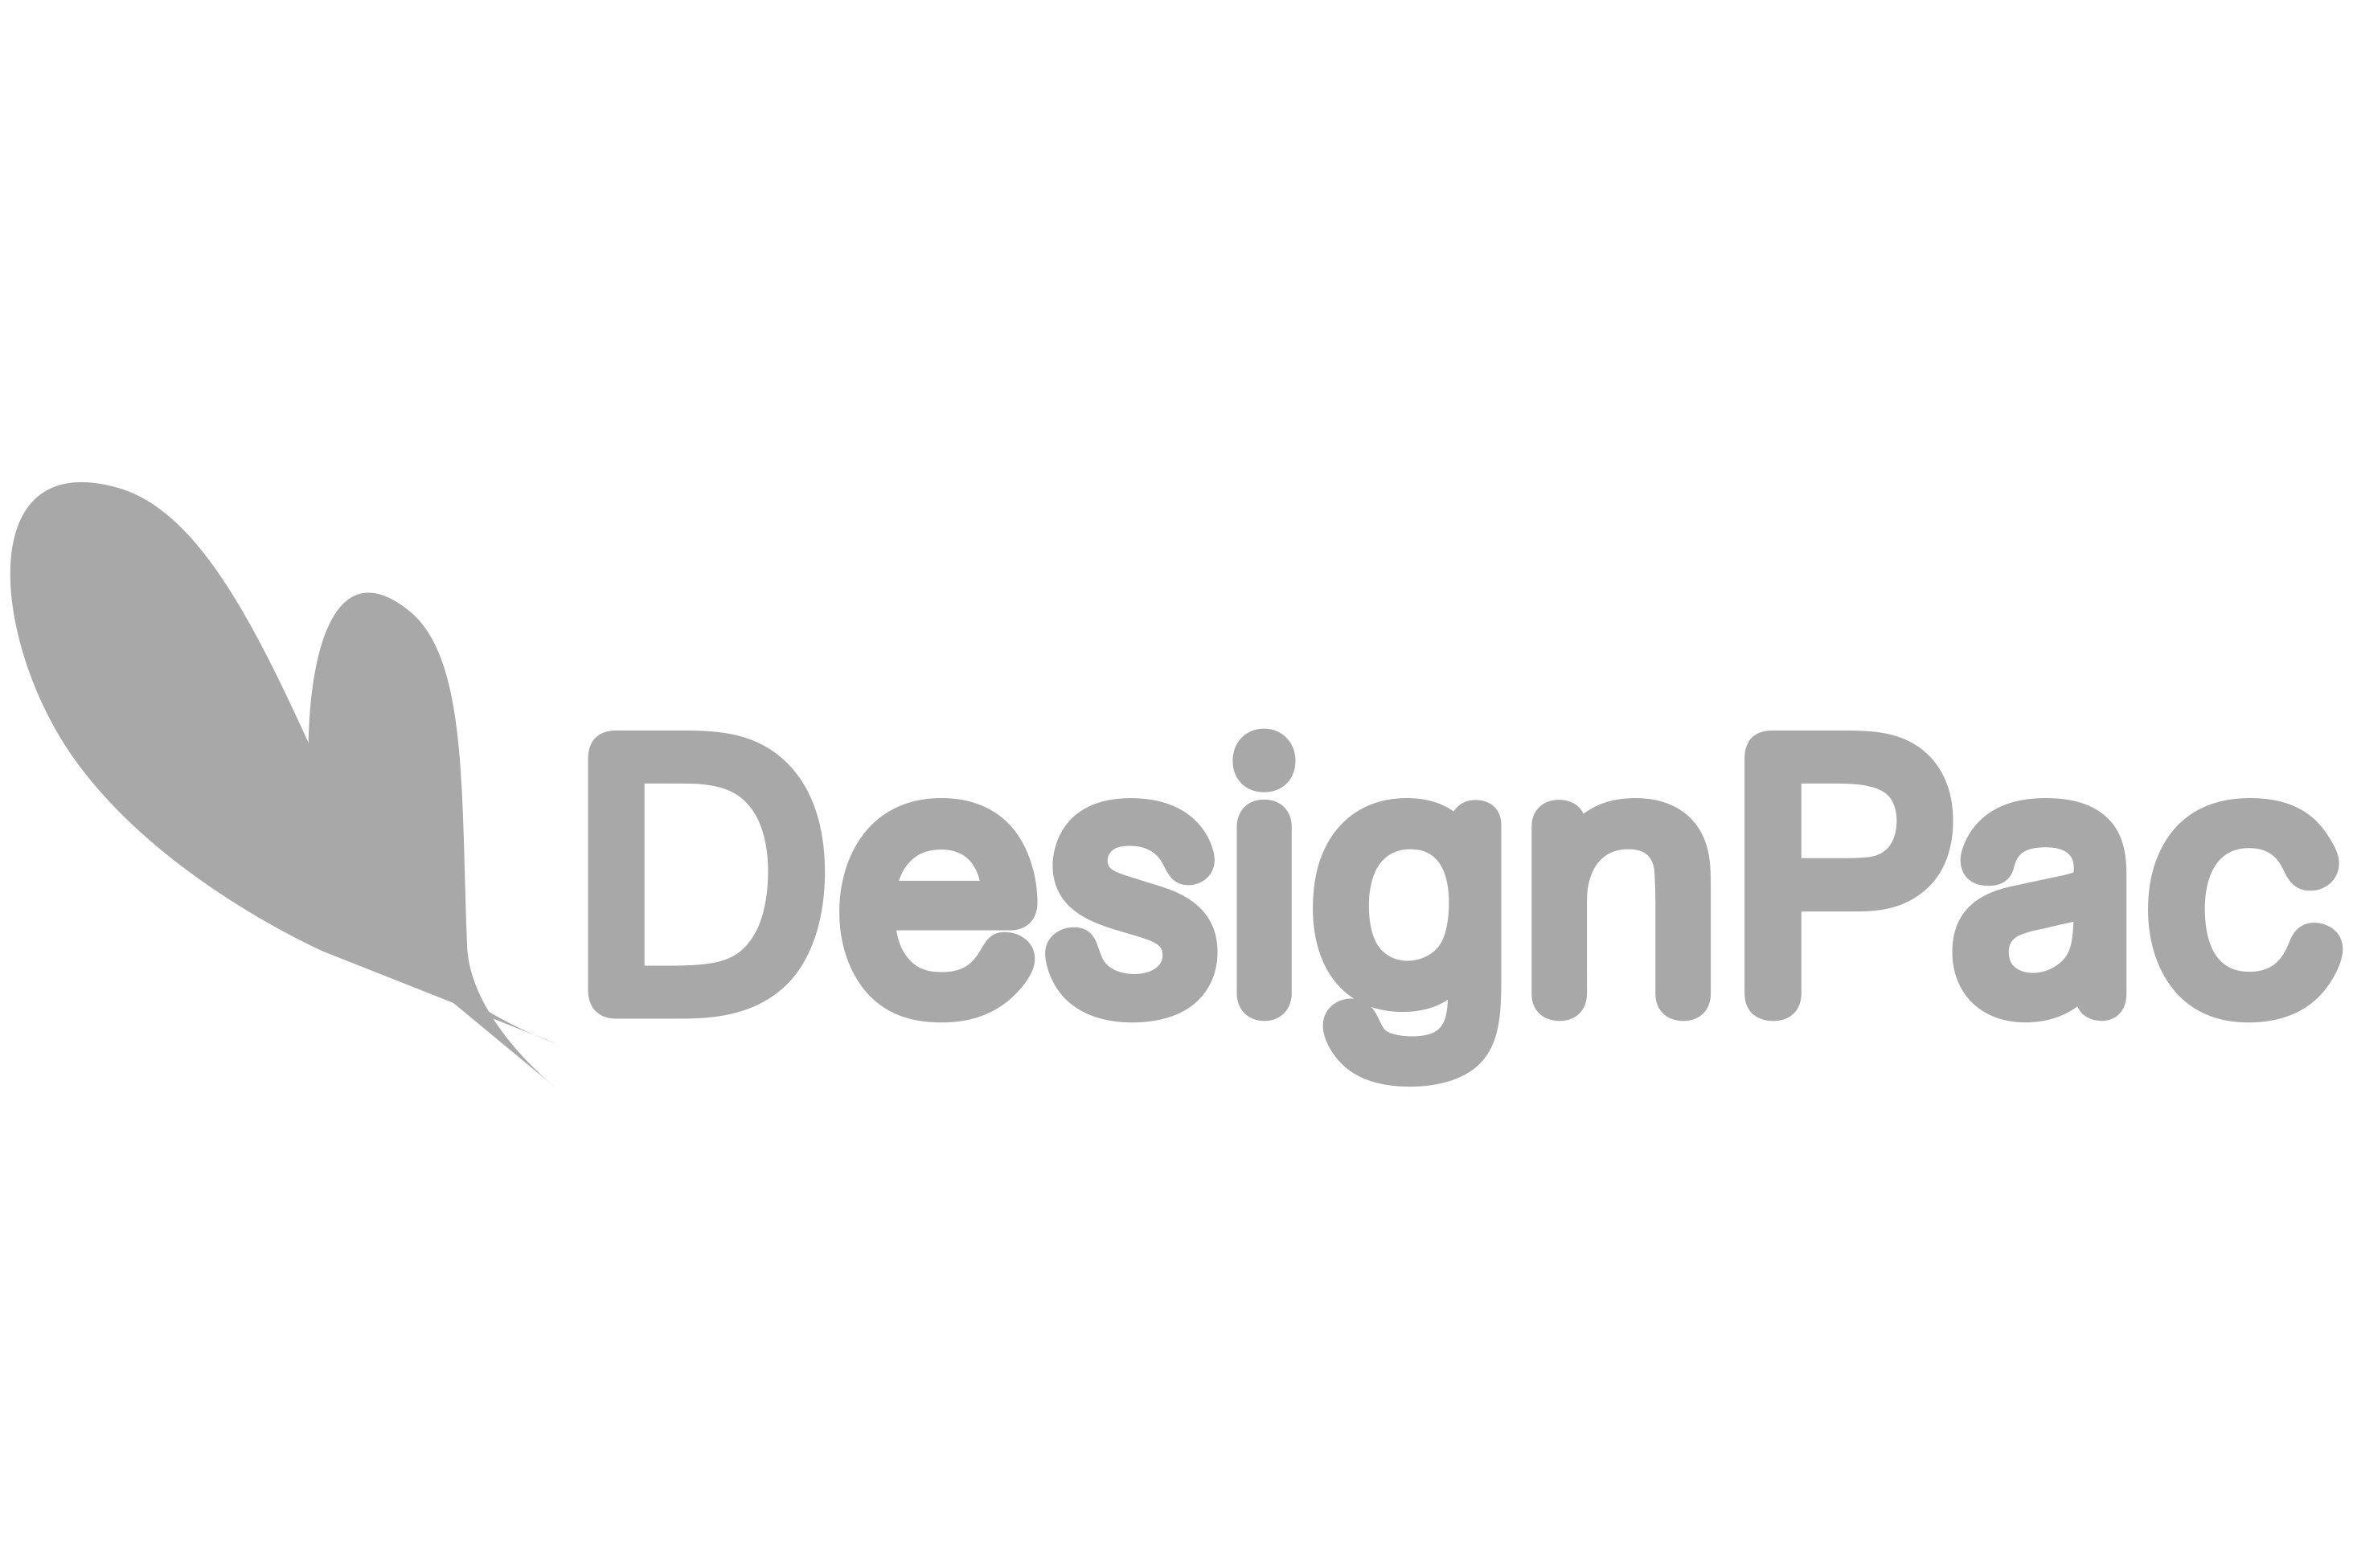 Design Pac